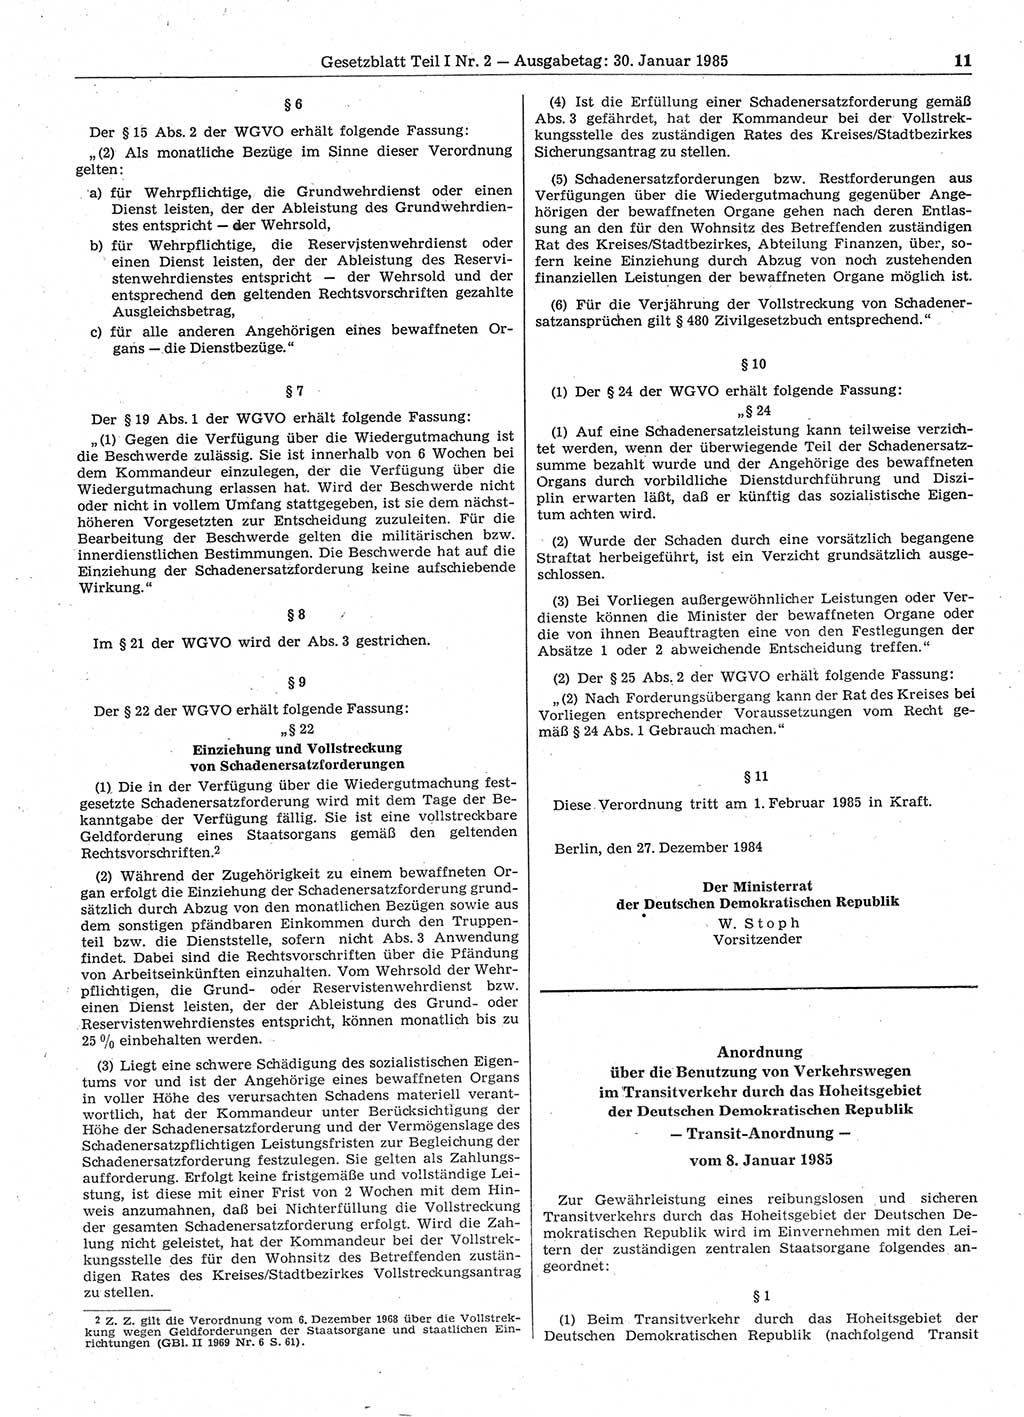 Gesetzblatt (GBl.) der Deutschen Demokratischen Republik (DDR) Teil Ⅰ 1985, Seite 11 (GBl. DDR Ⅰ 1985, S. 11)